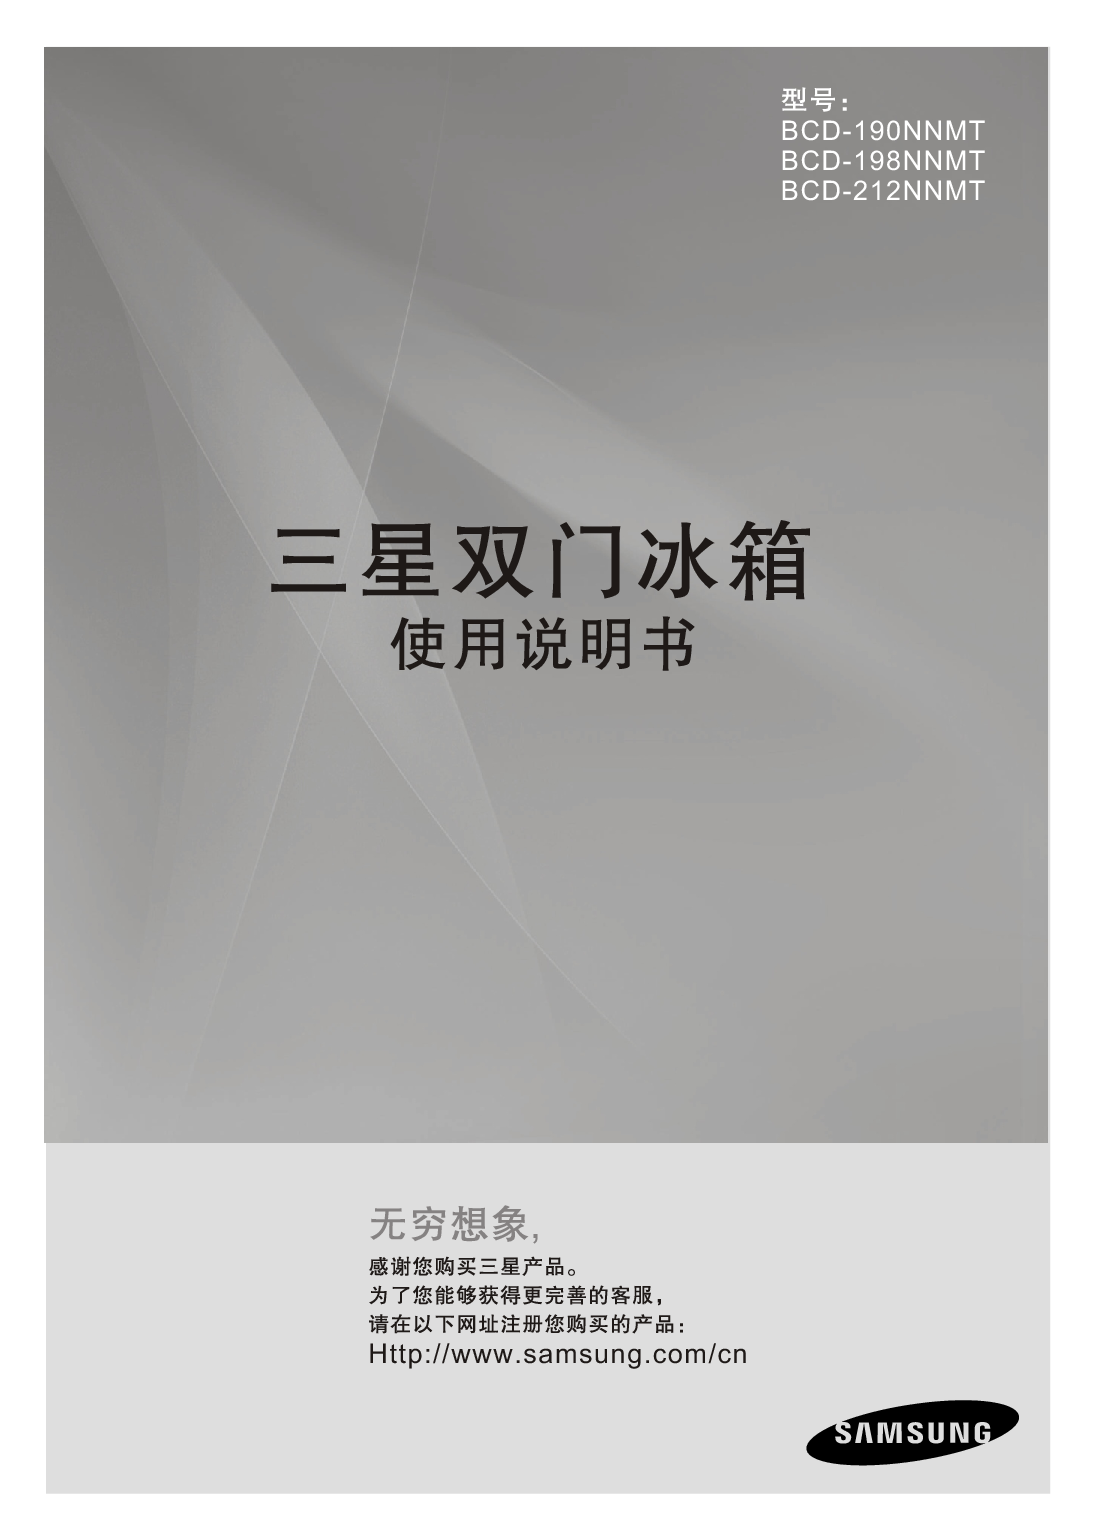 三星 Samsung BCD-190NNMT 使用说明书 封面